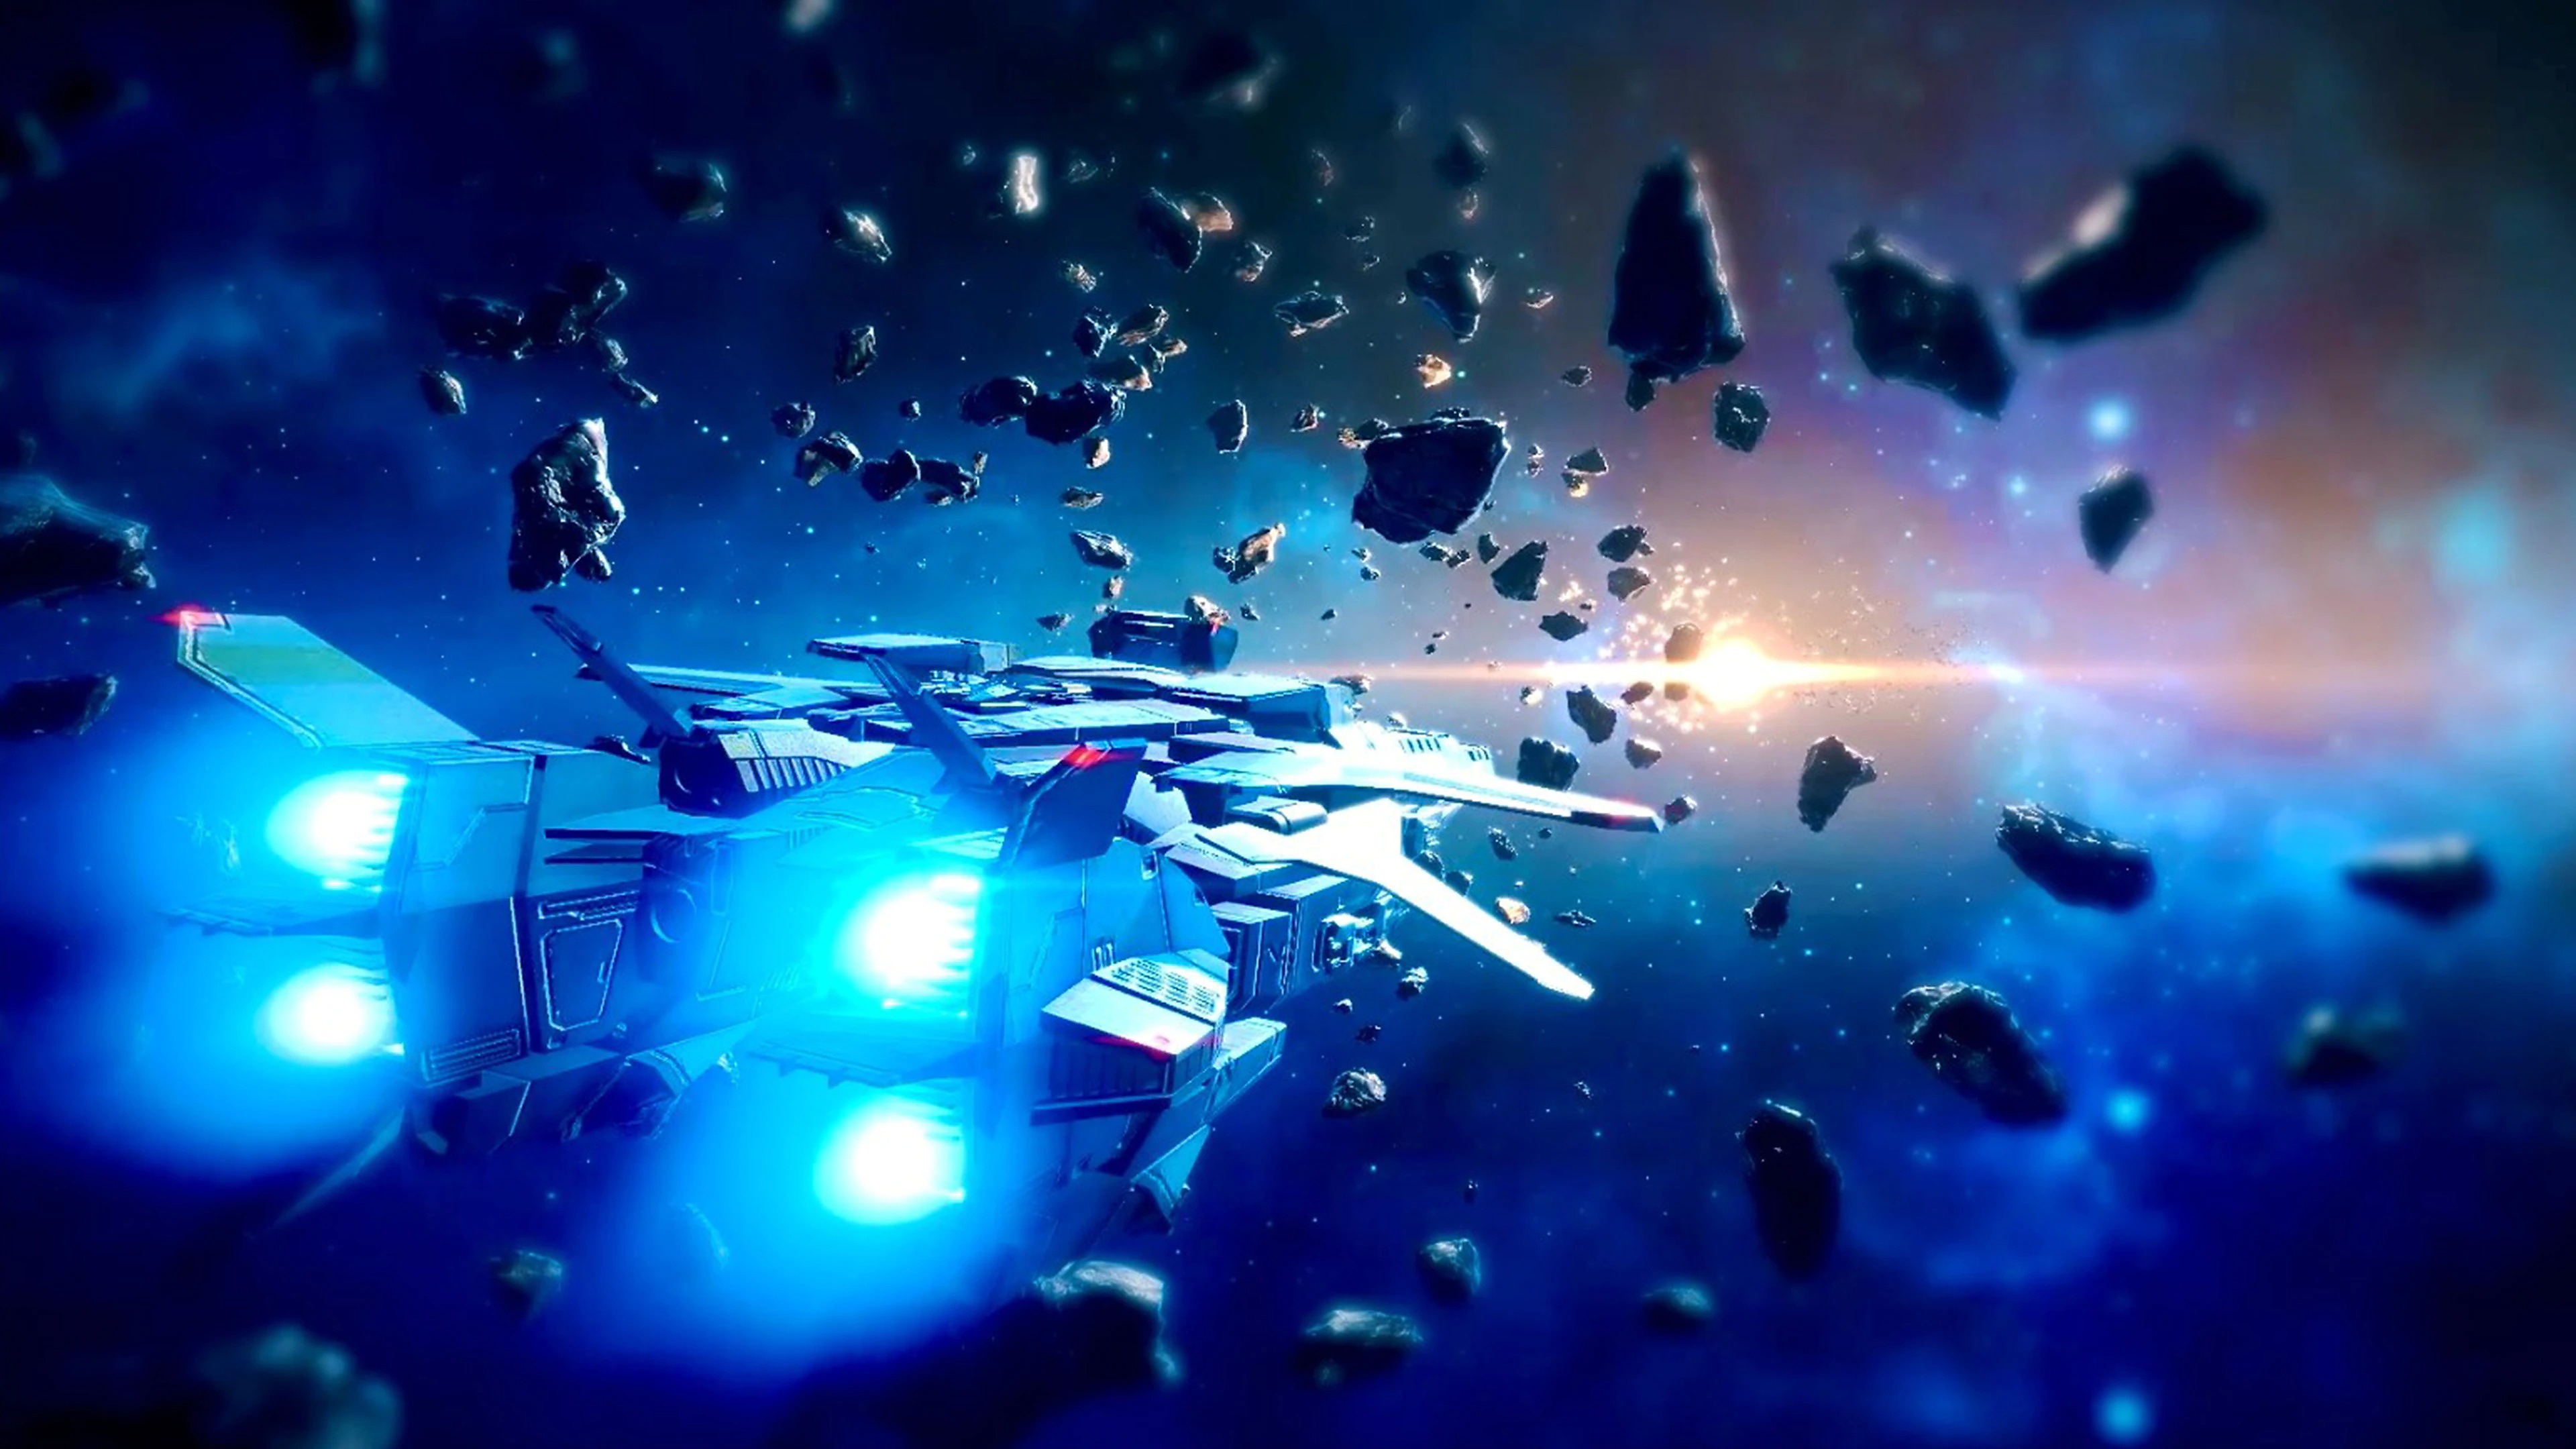 Relayer - Captura de tela exibindo uma nave espacial voando através de rochas no espaço